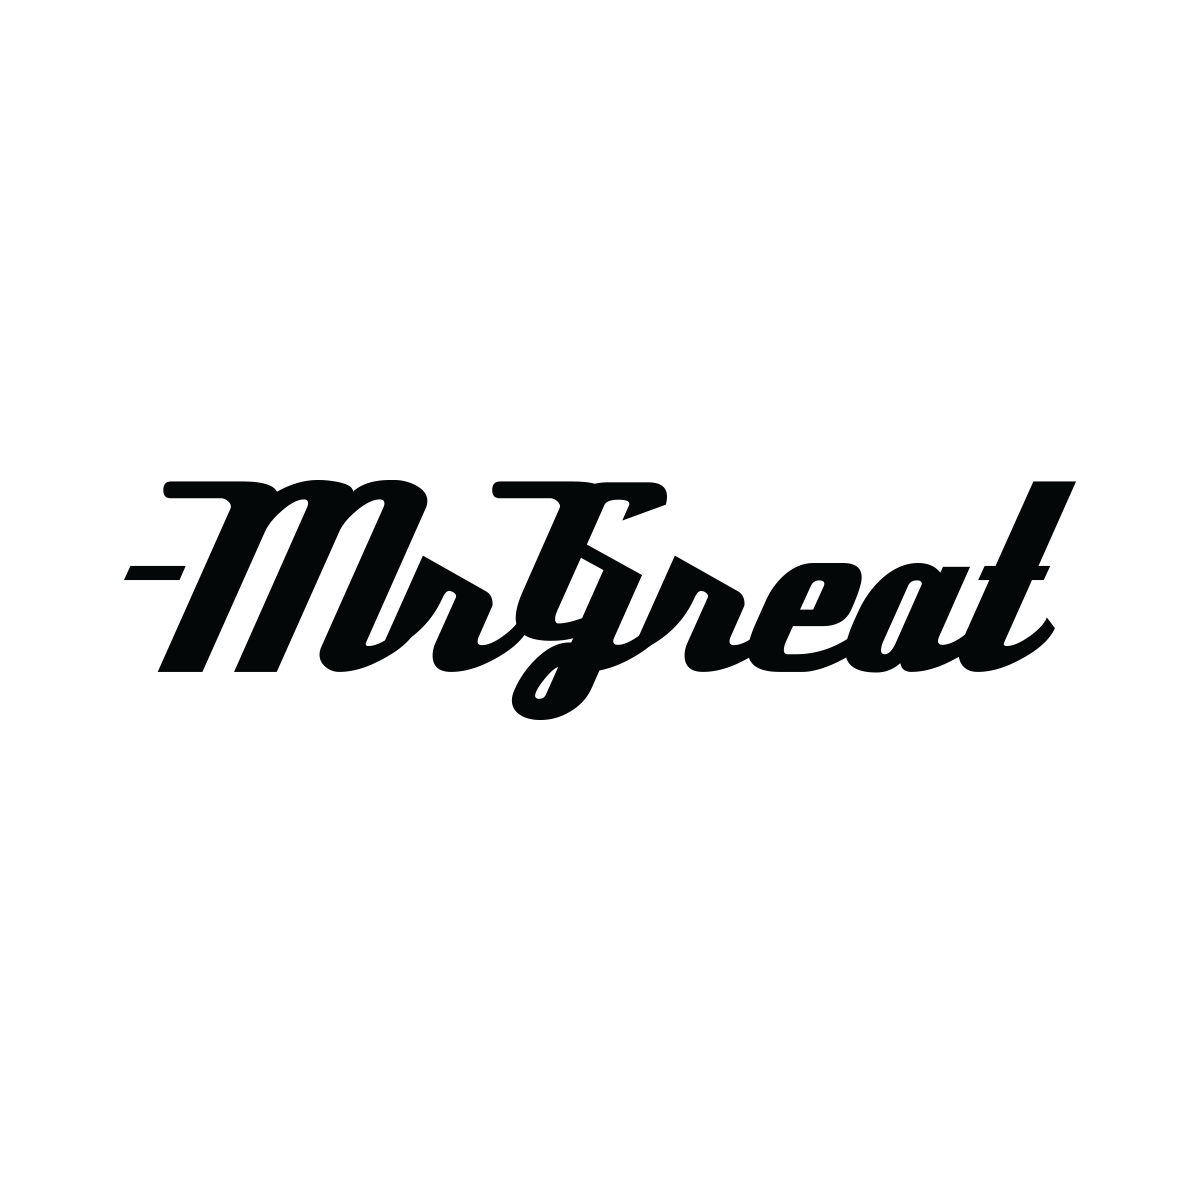 Mr Great | Social Media Marketing Agency